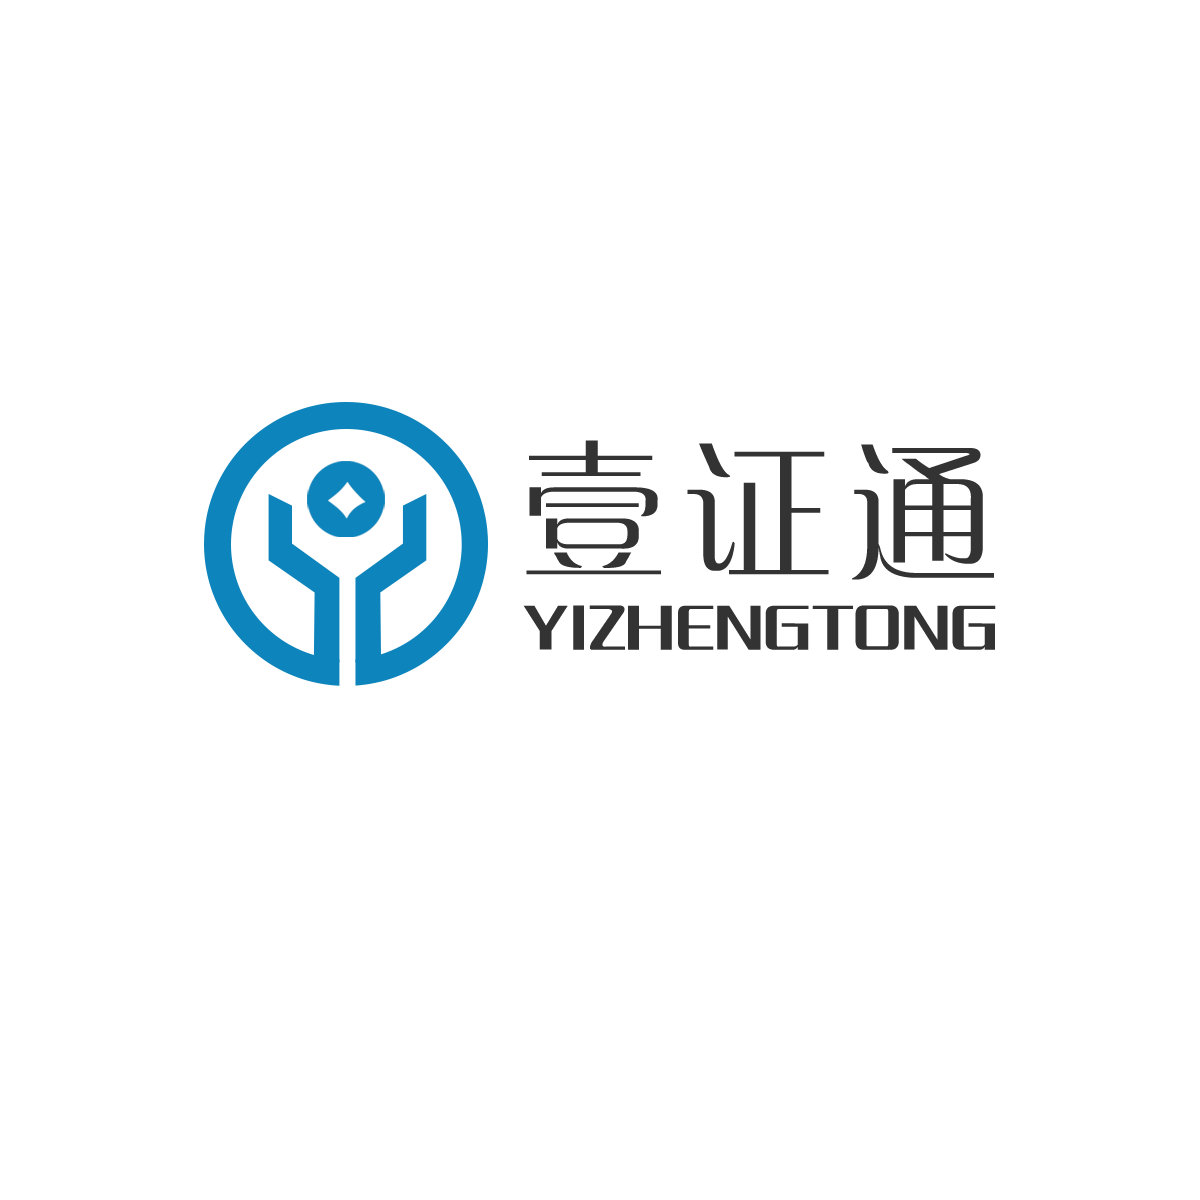 Chongqing yizhengtong information technology co. LTD